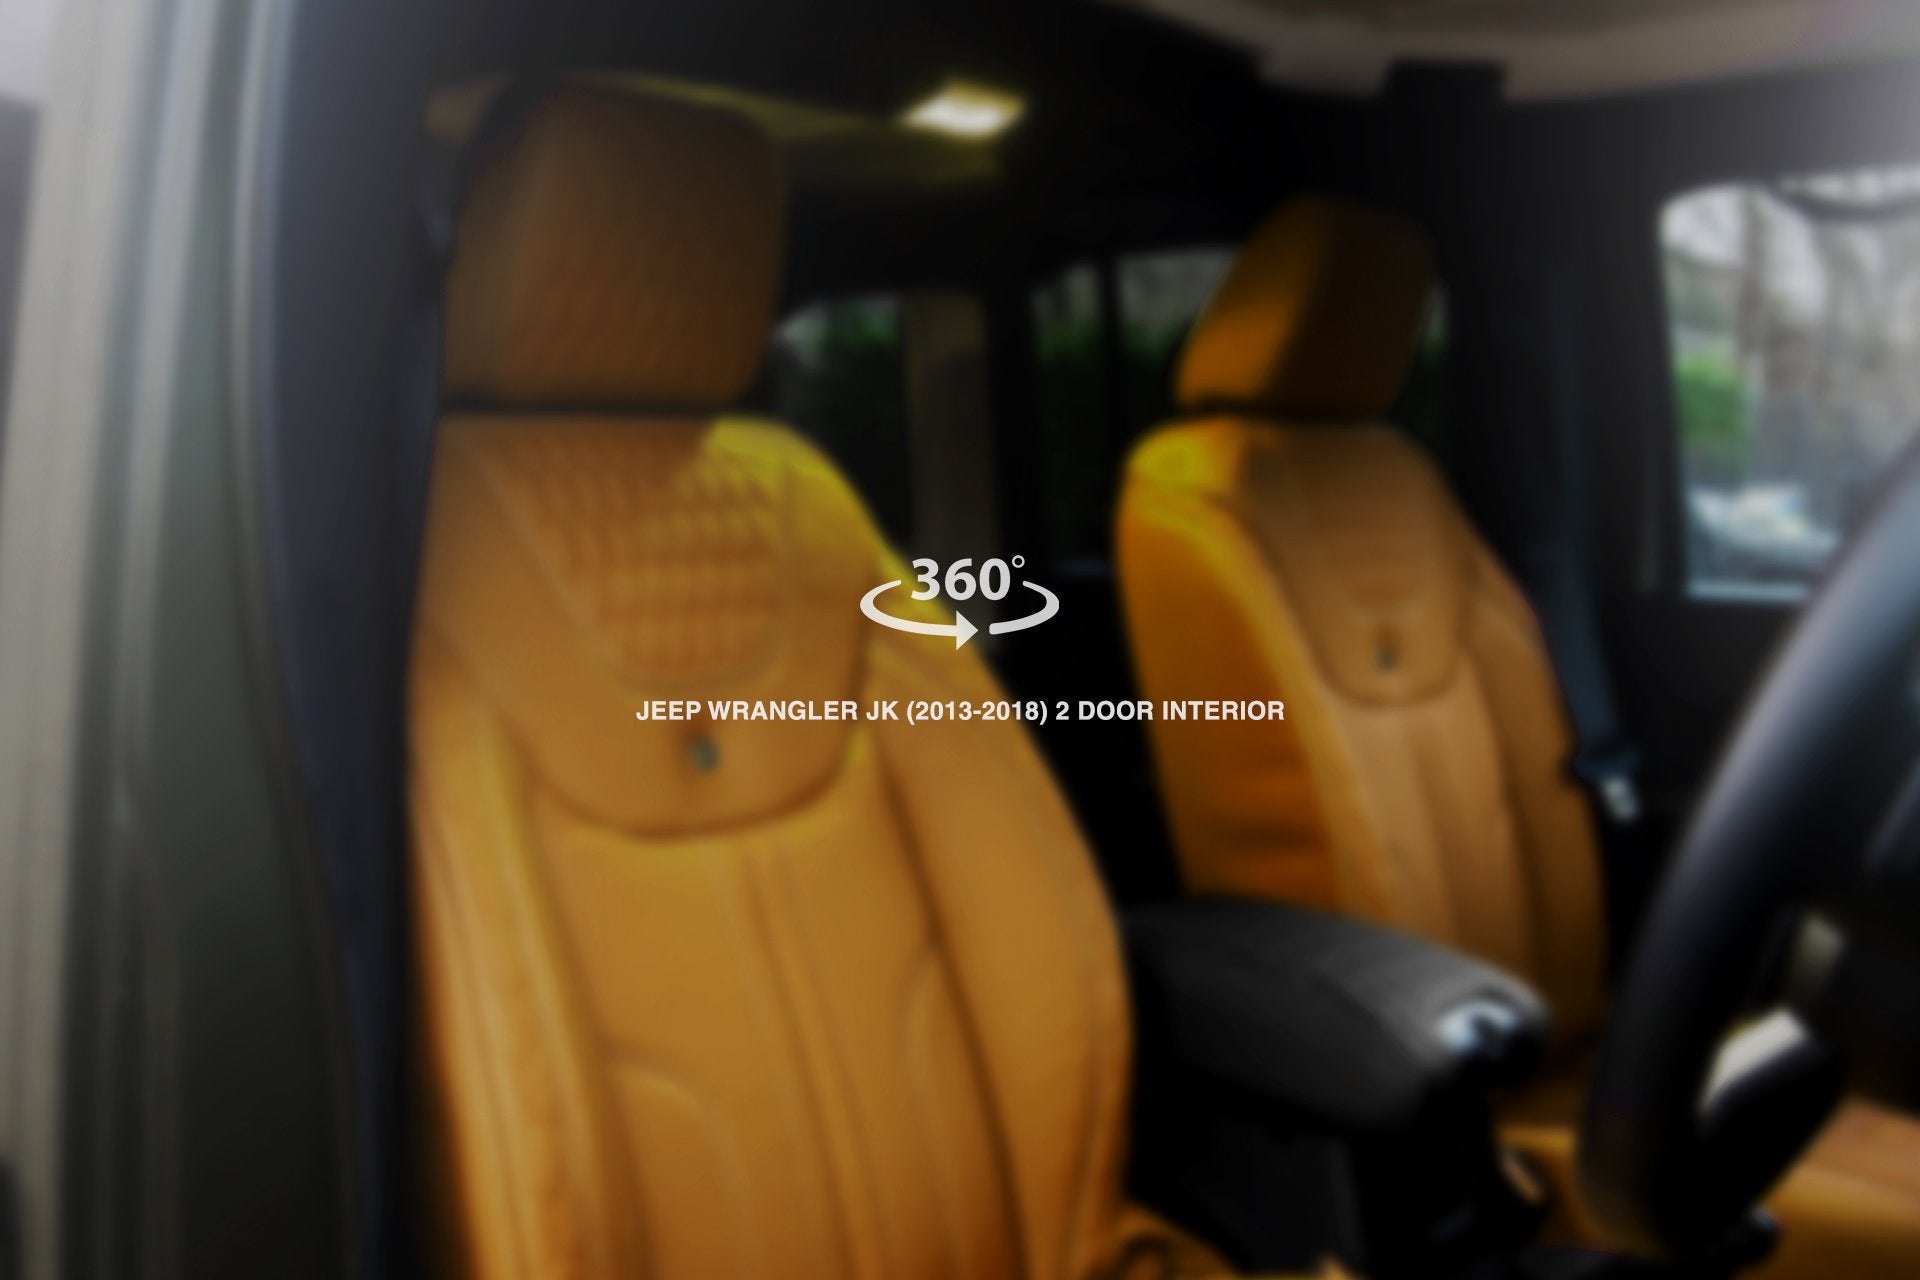 Jeep Wrangler JK 2 Door (2013-2018) Comfort Leather Interior 360° Tour